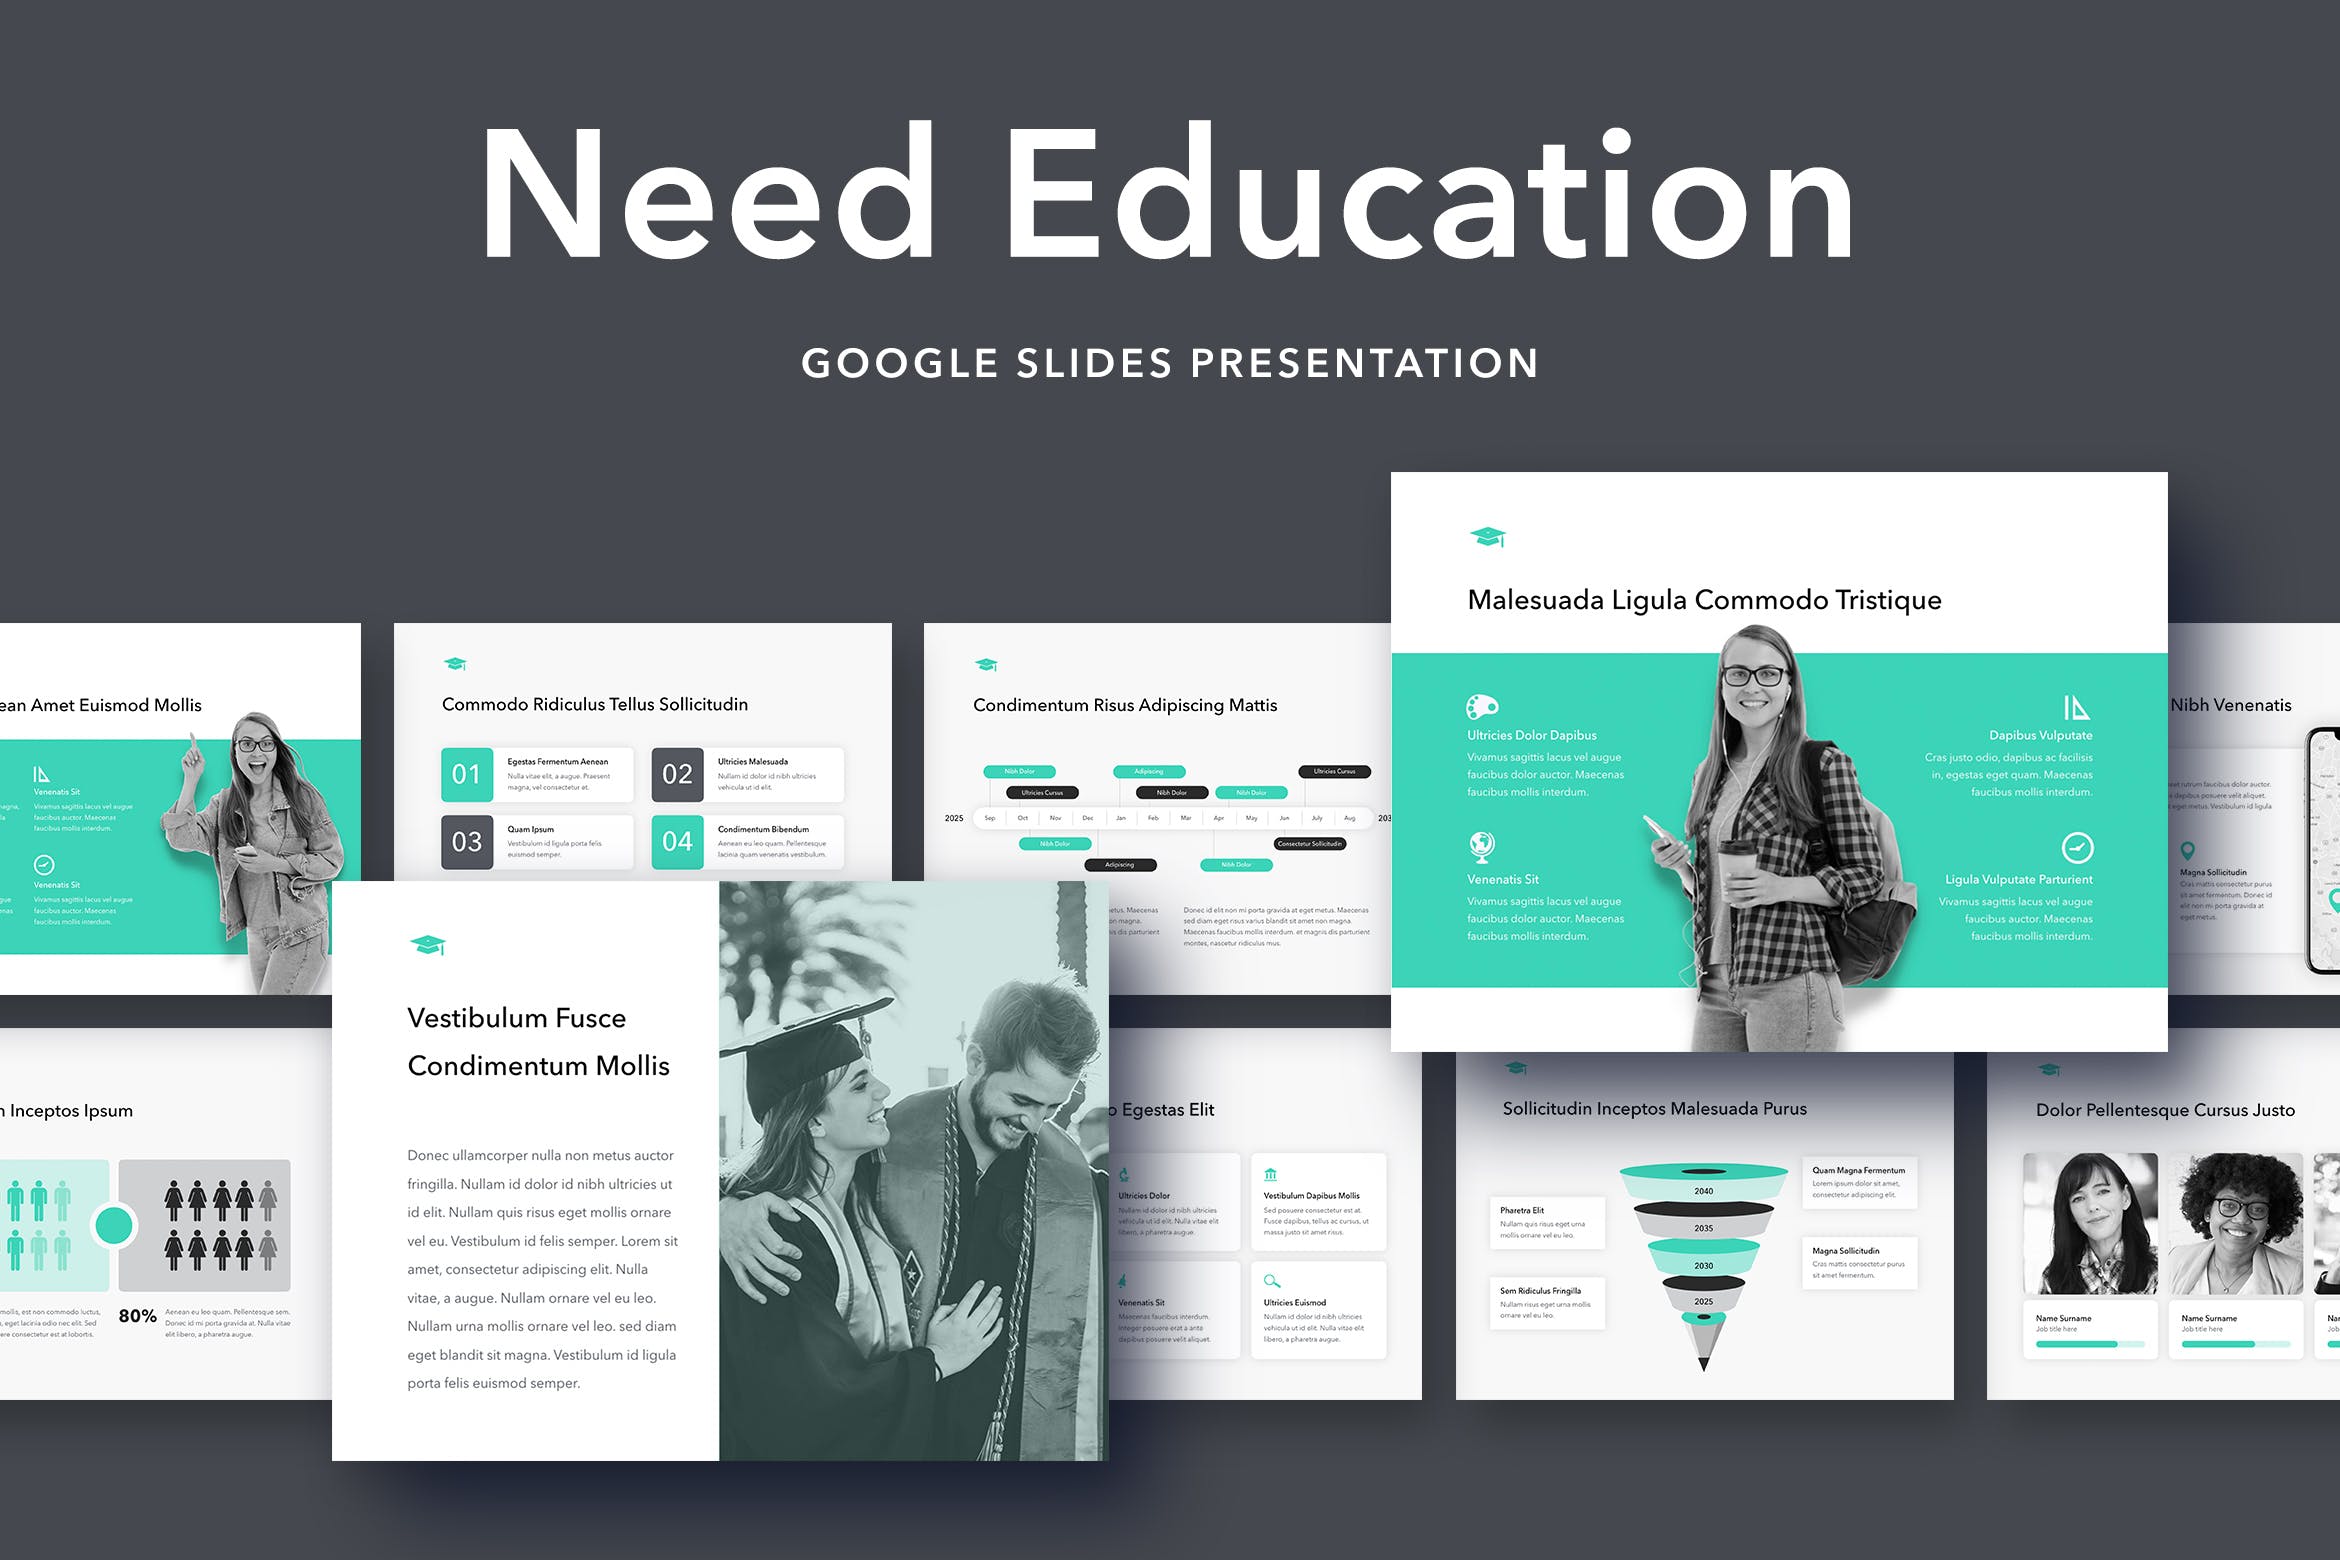 教育培训机构介绍谷歌幻灯片模板 Need Education Google Slides Template插图